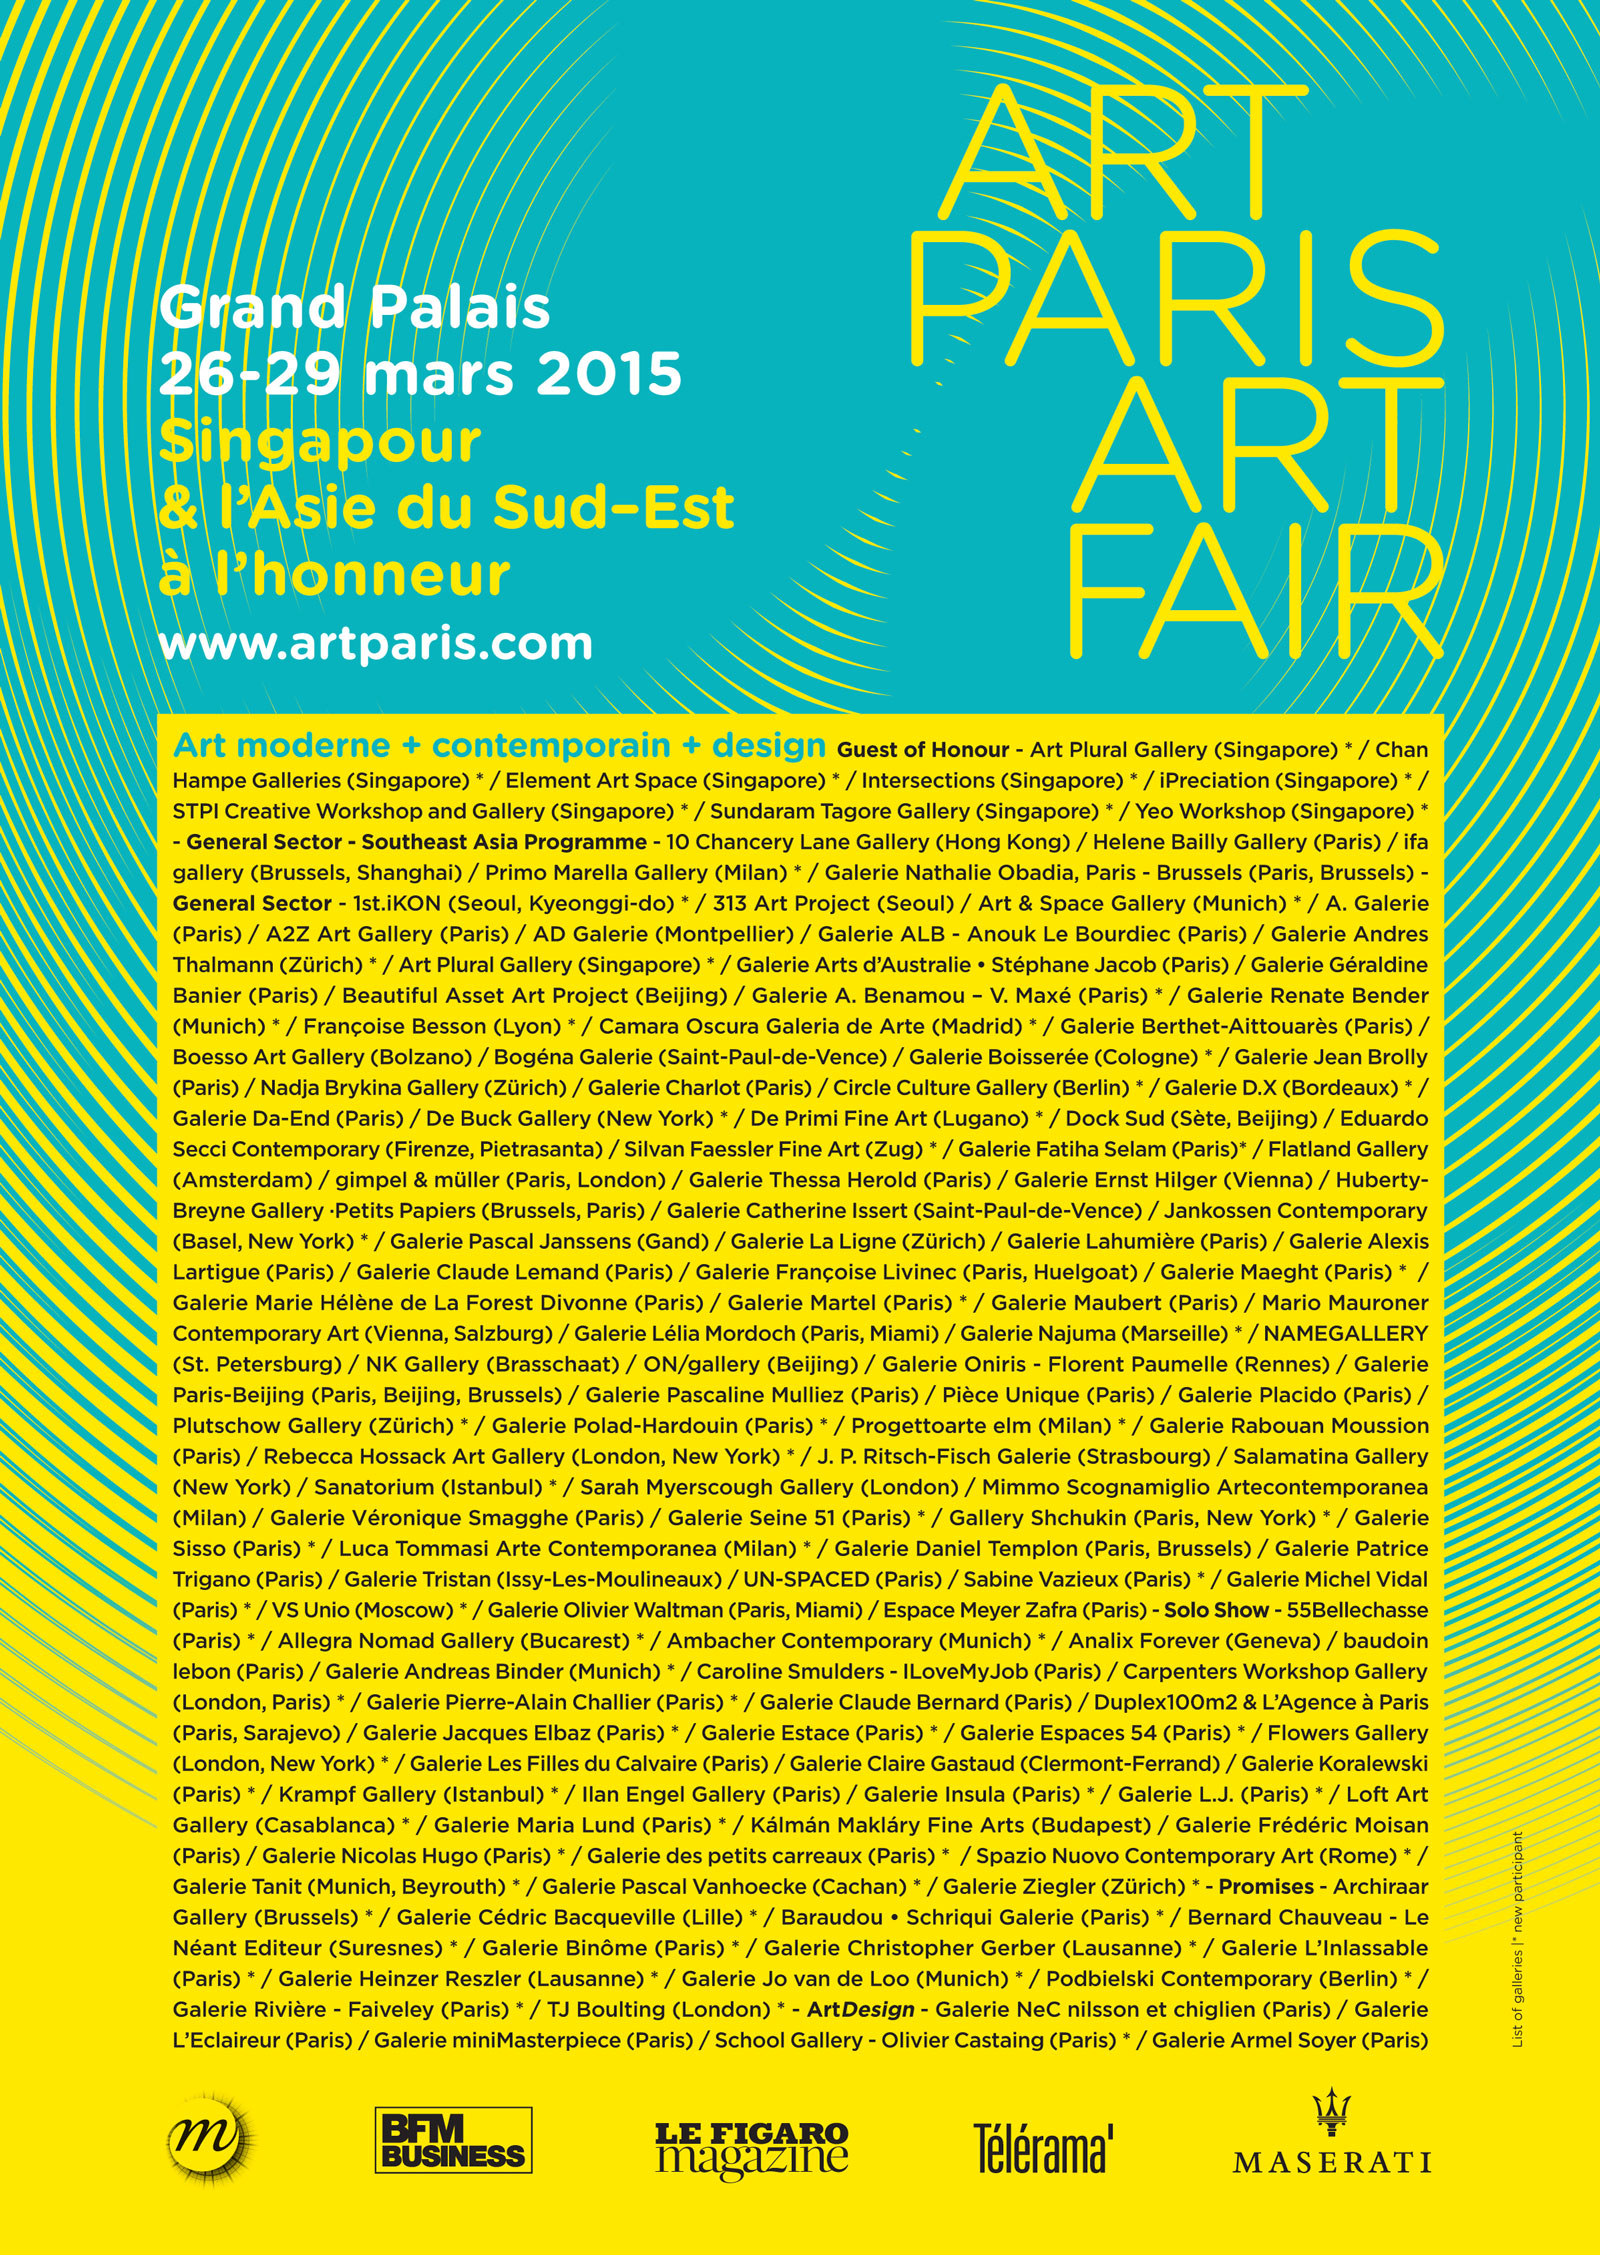 Art-Paris-Art-Fair-List-2015